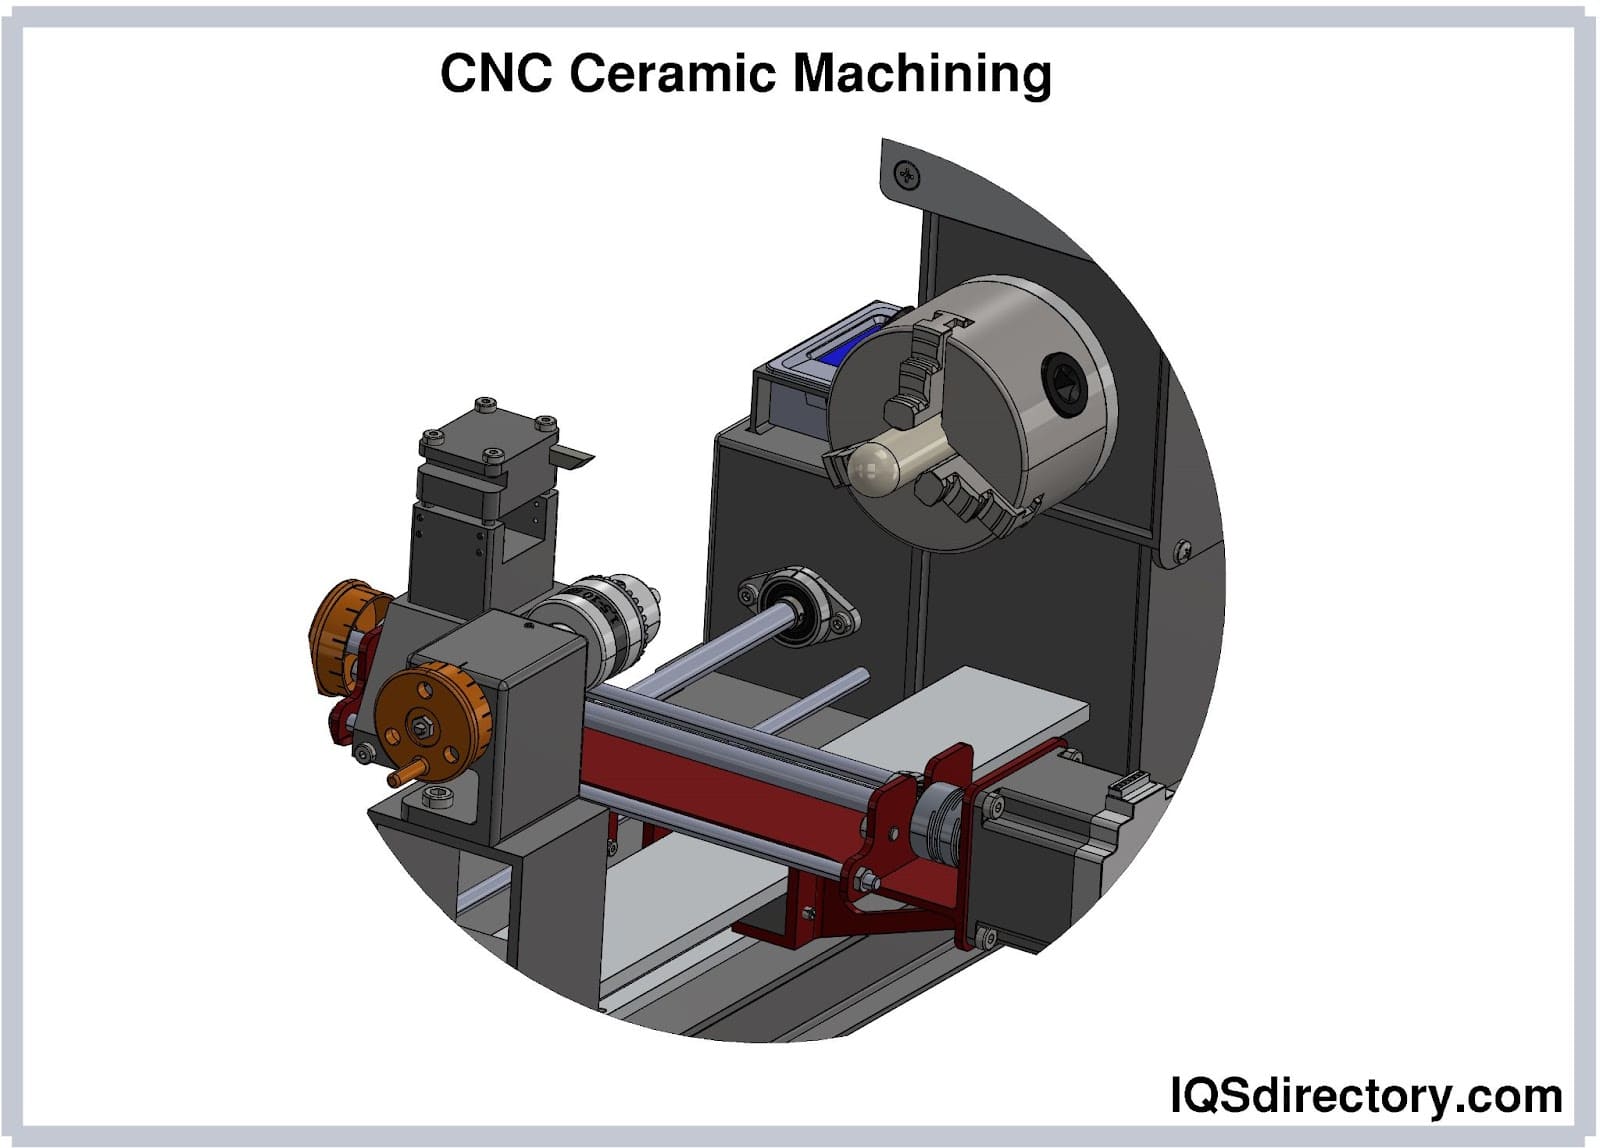 CNC Ceramic Machining